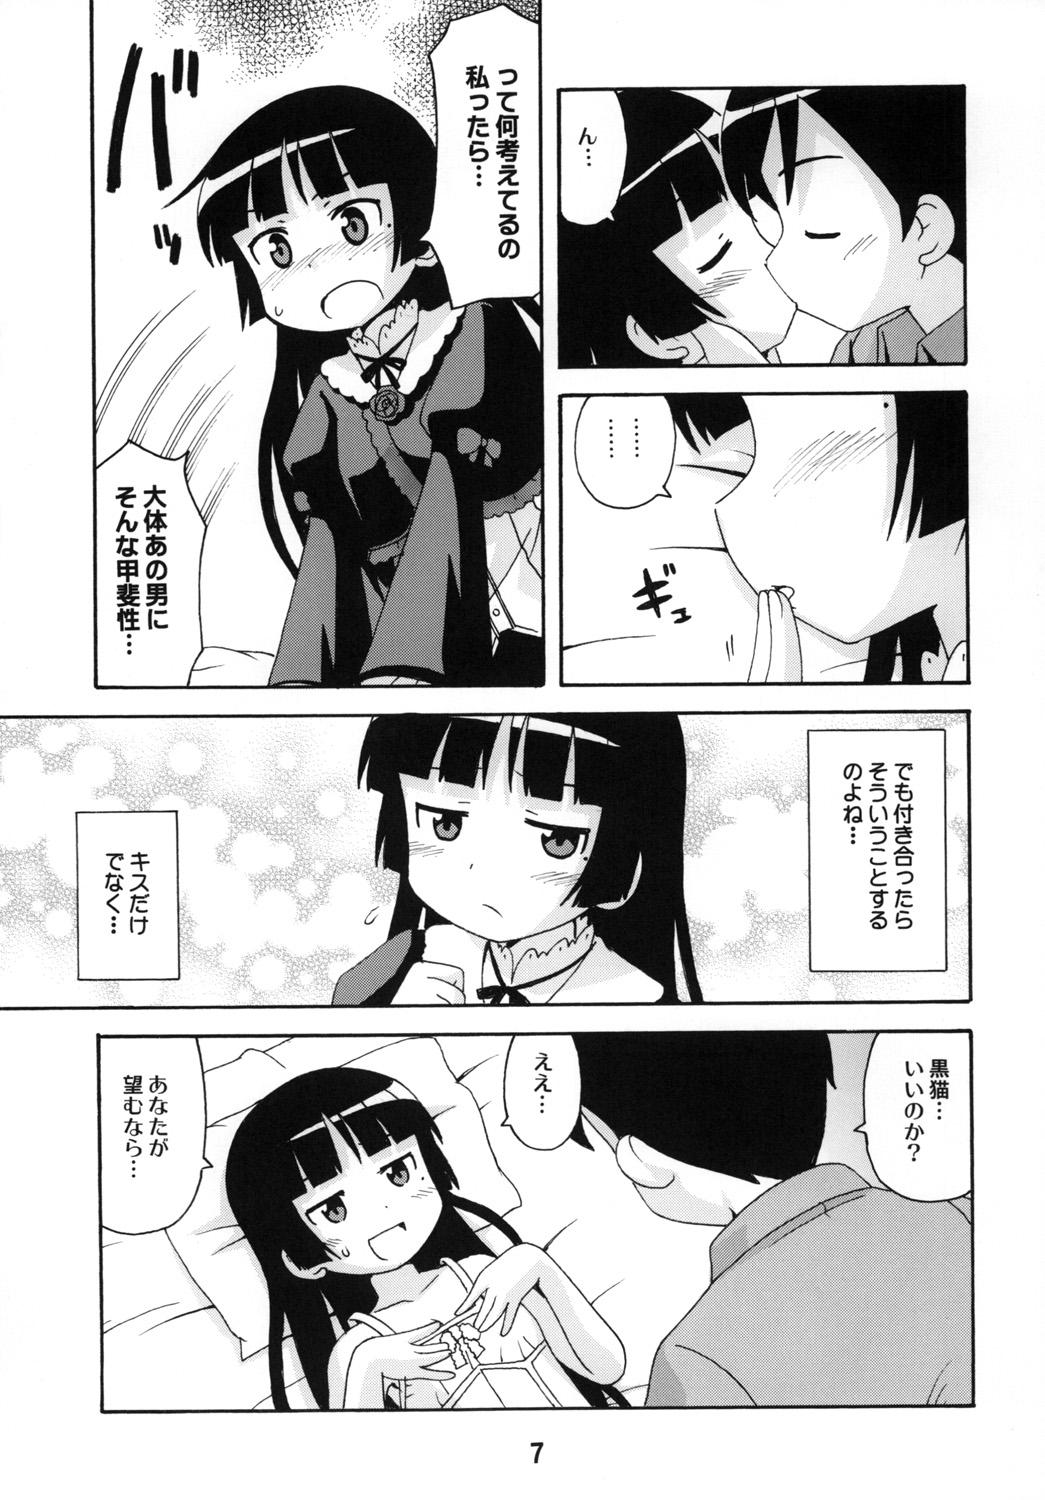 Teacher sis-con 5 - Ore no imouto ga konna ni kawaii wake ga nai Sexteen - Page 6